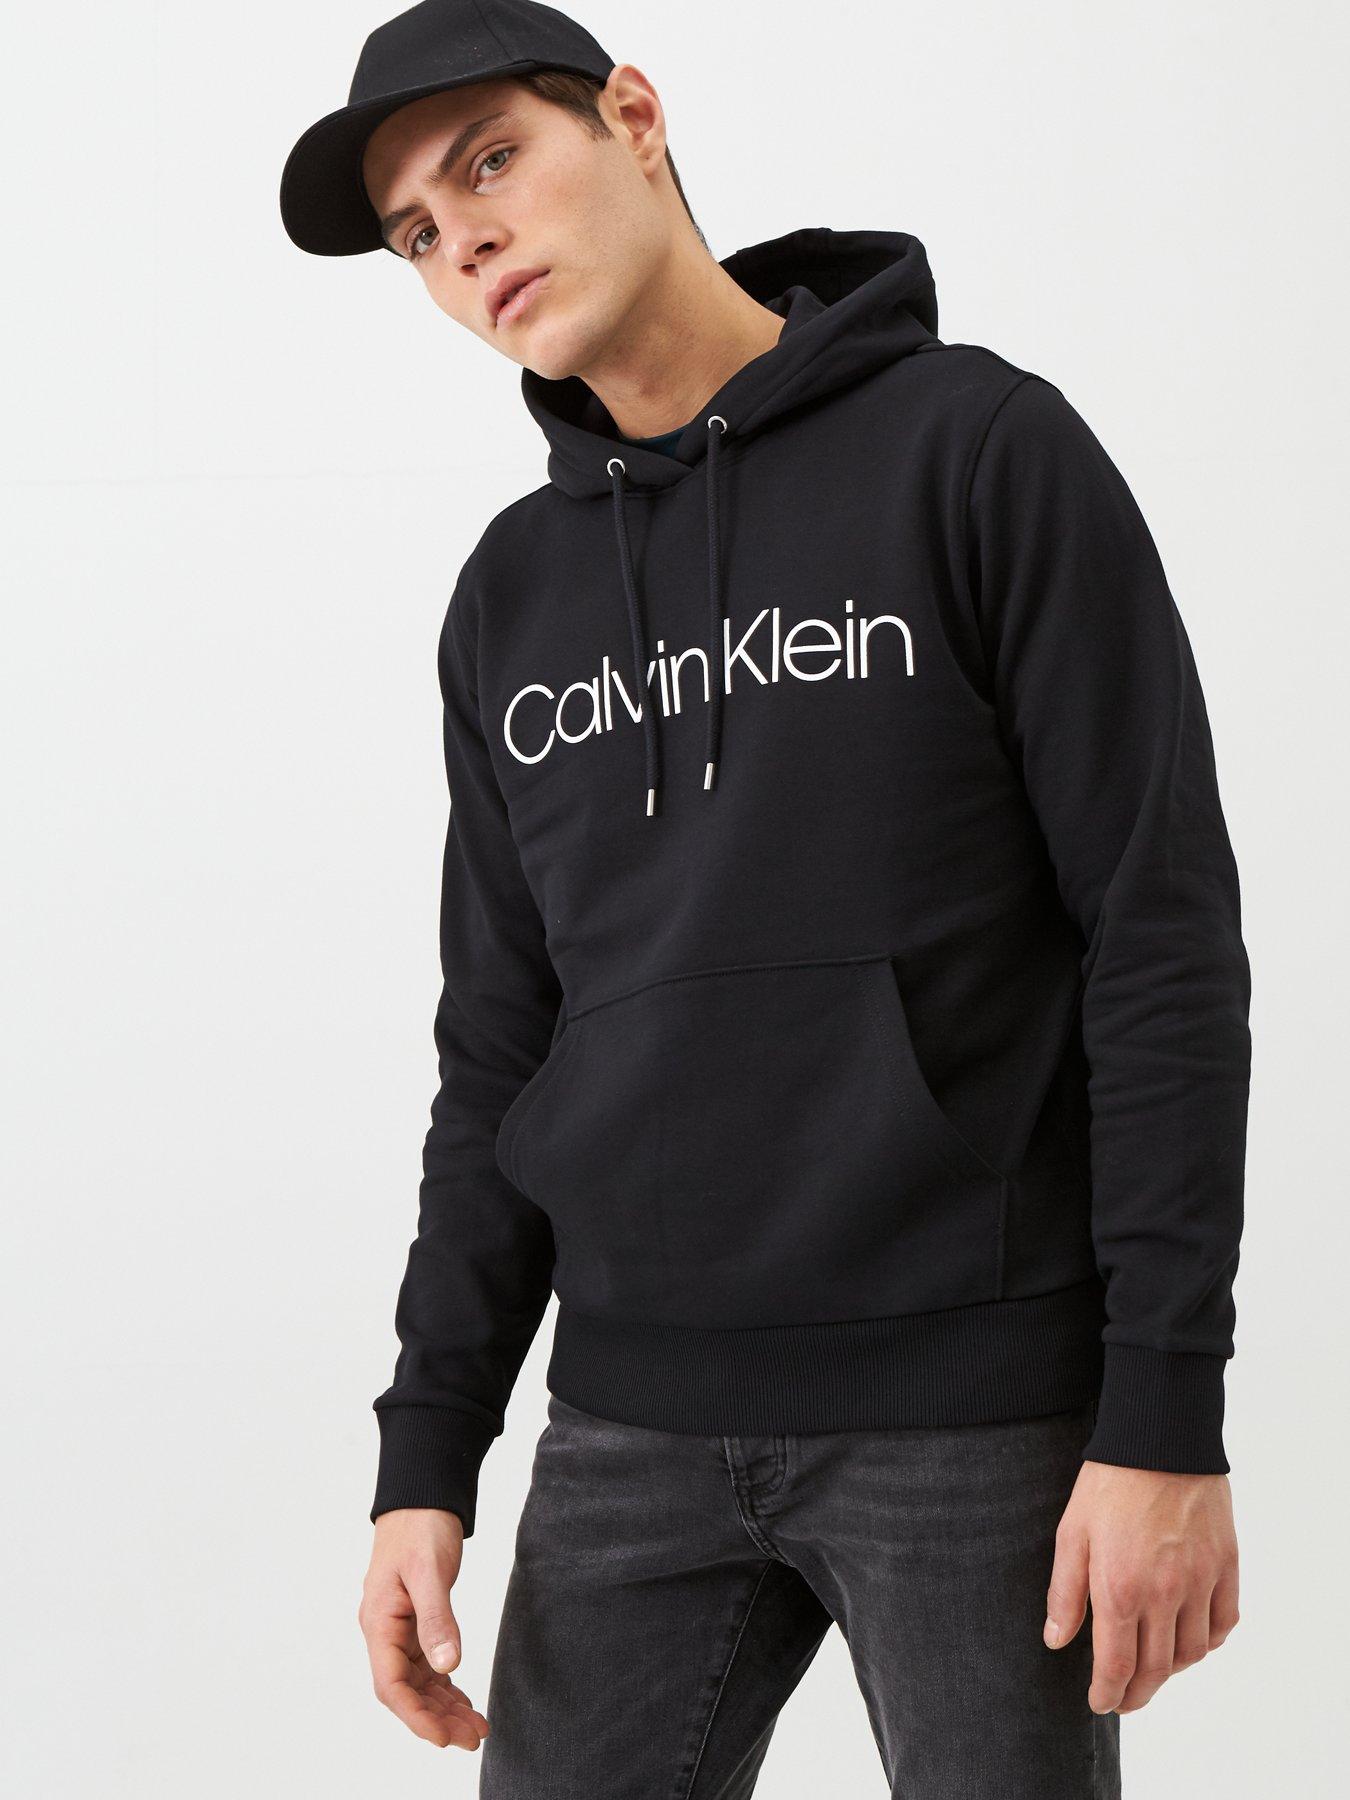 S | Calvin klein | Hoodies & sweatshirts | Men 